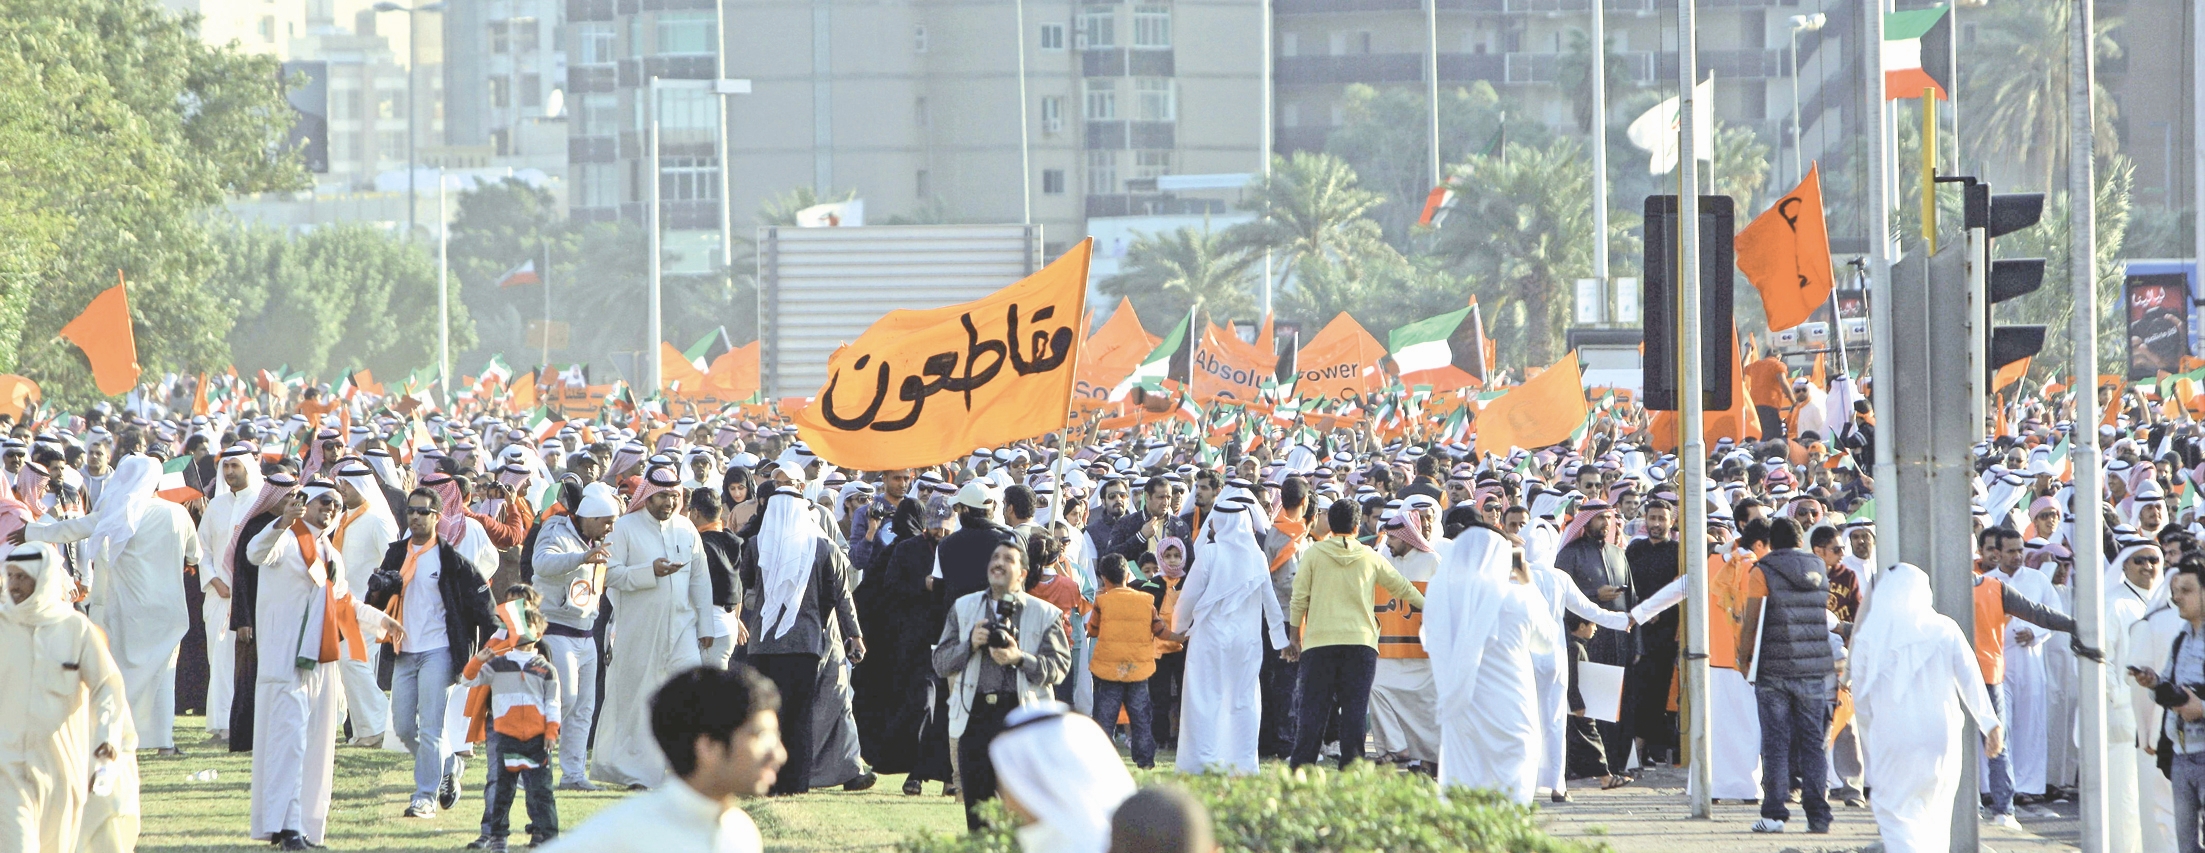 اعتراضات مردمی - کویت